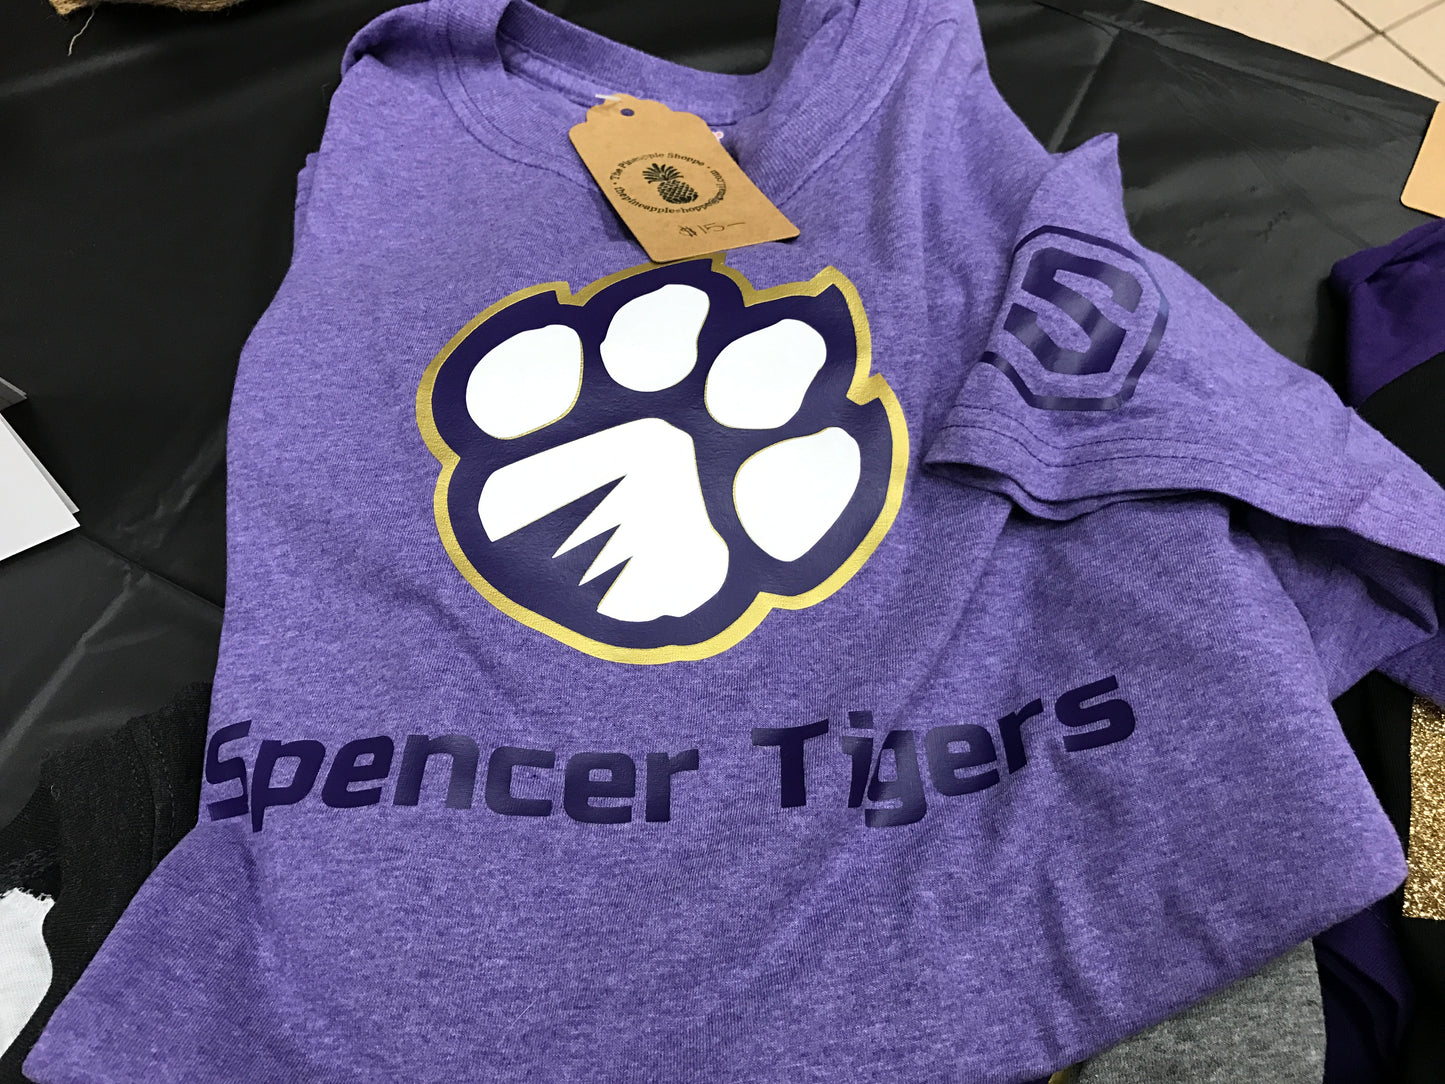 Spencer Tiger Logo Tshirt